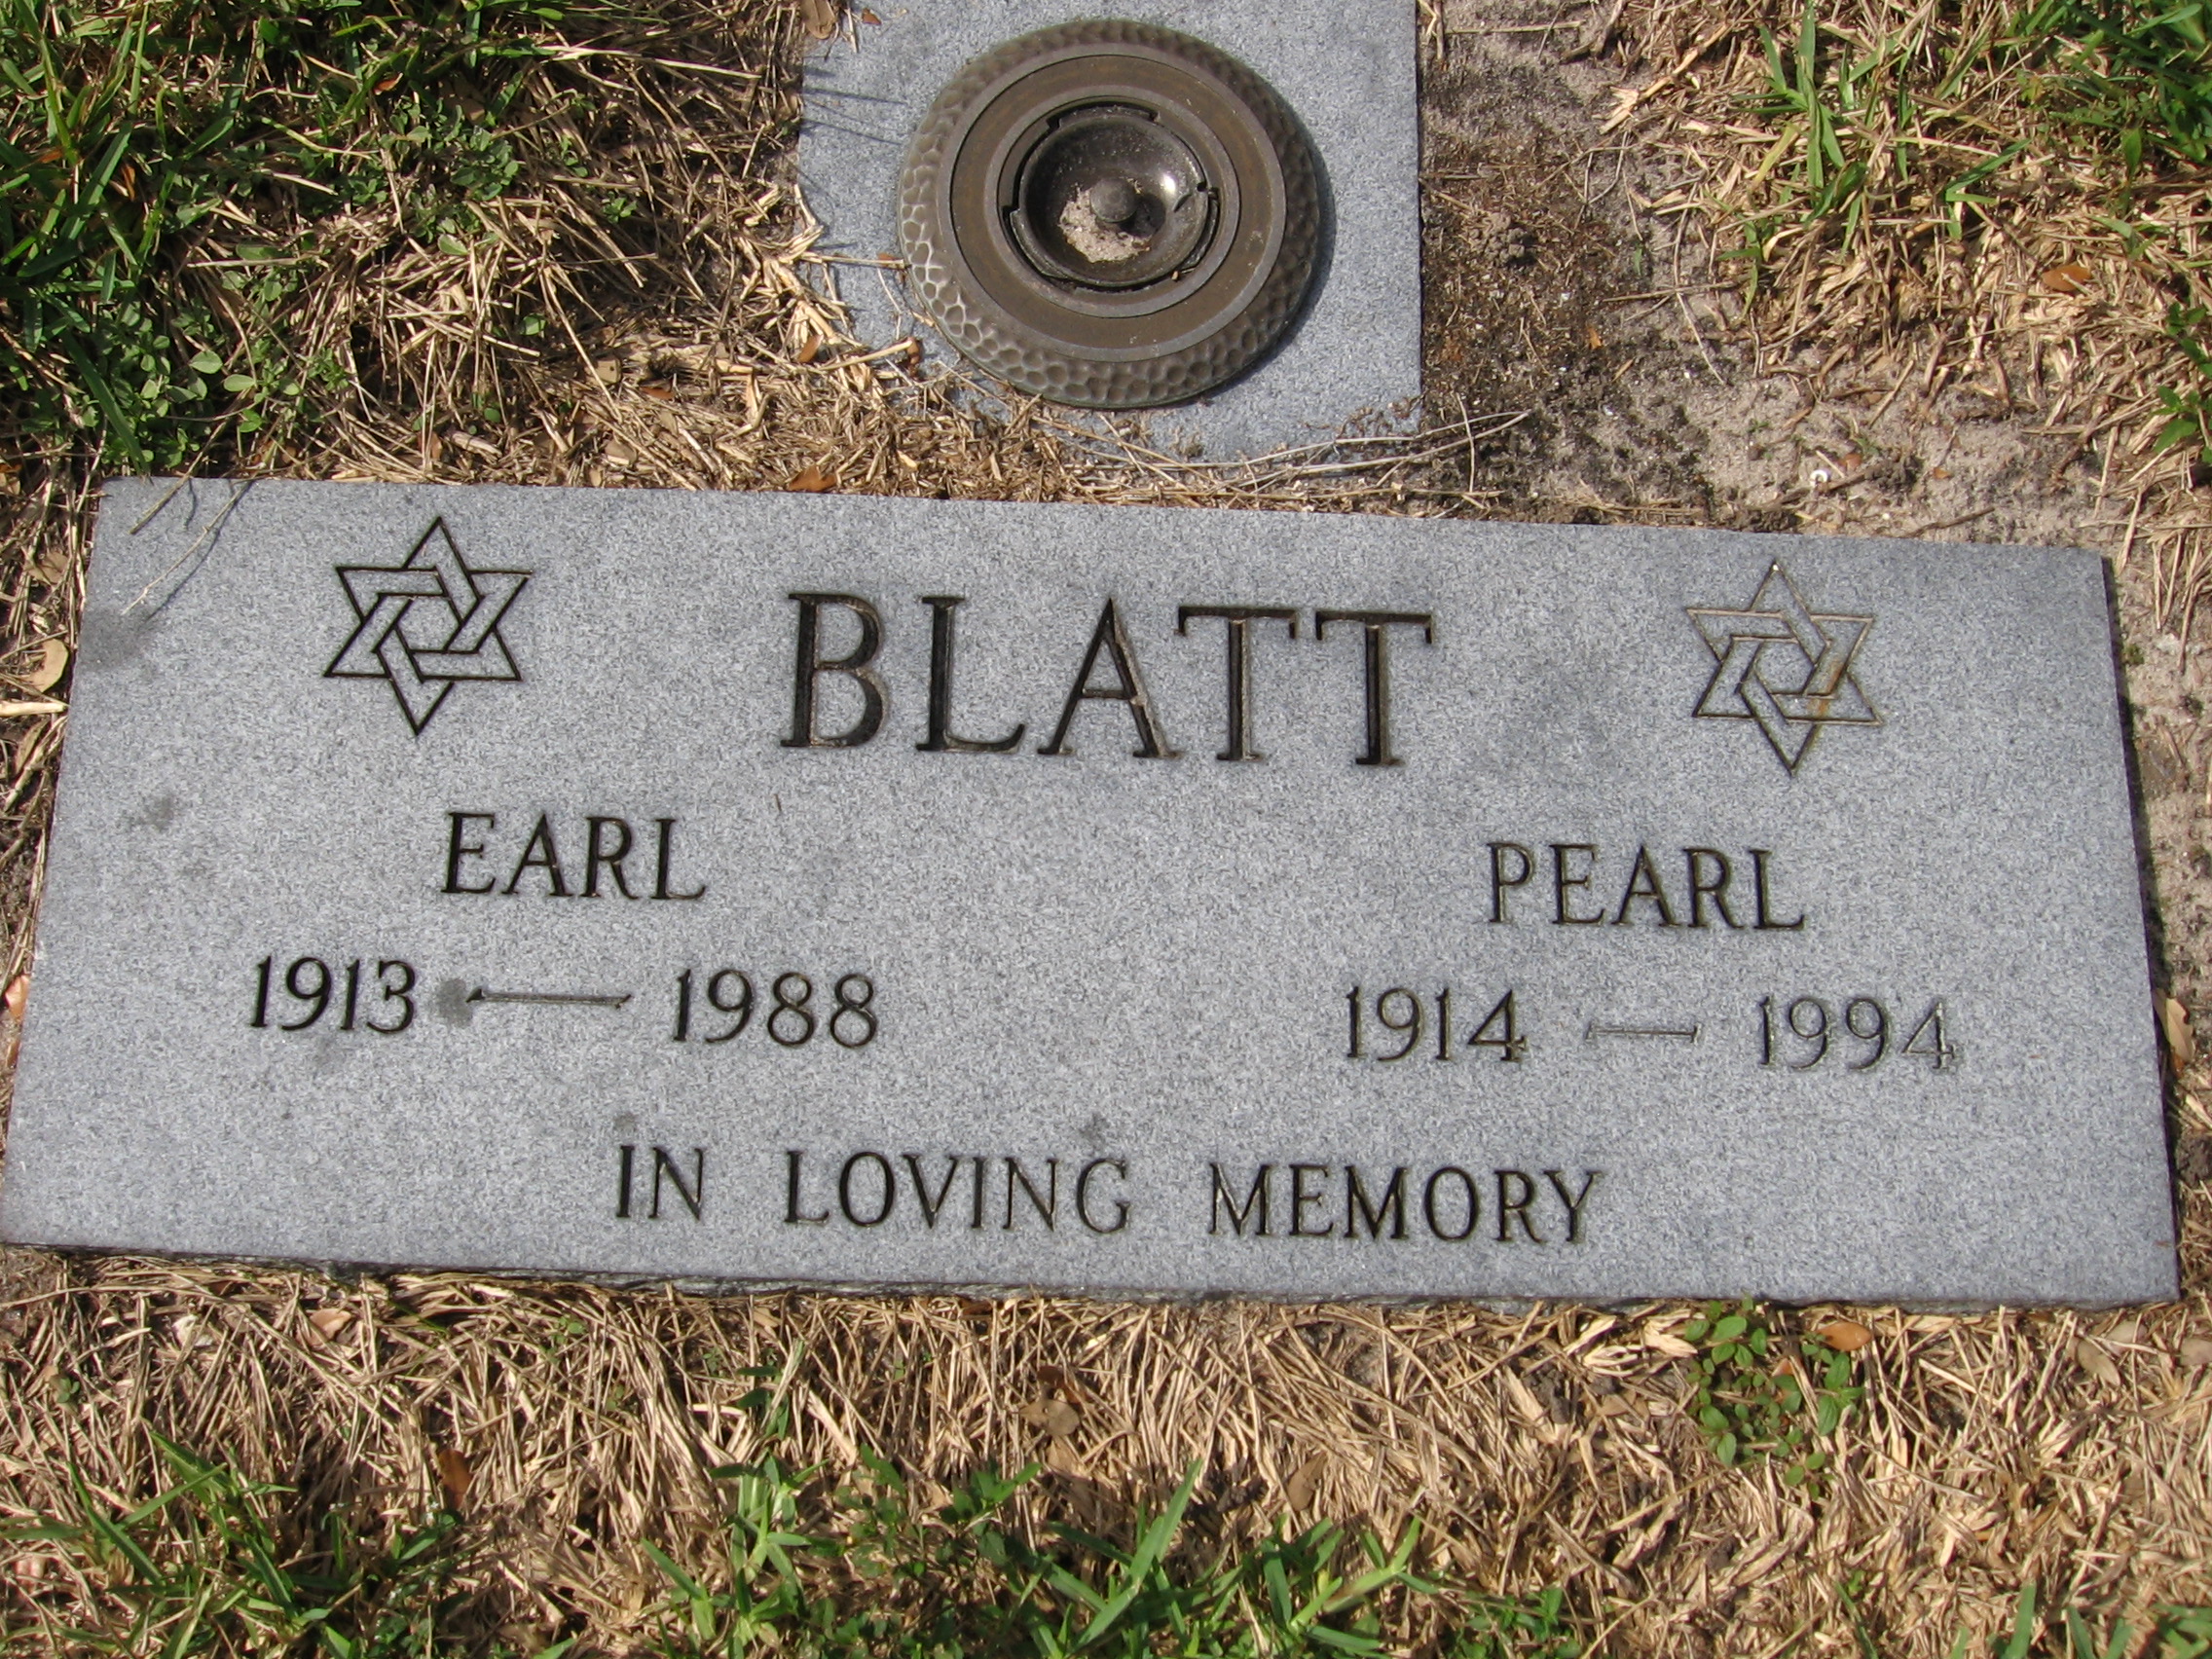 Pearl Blatt